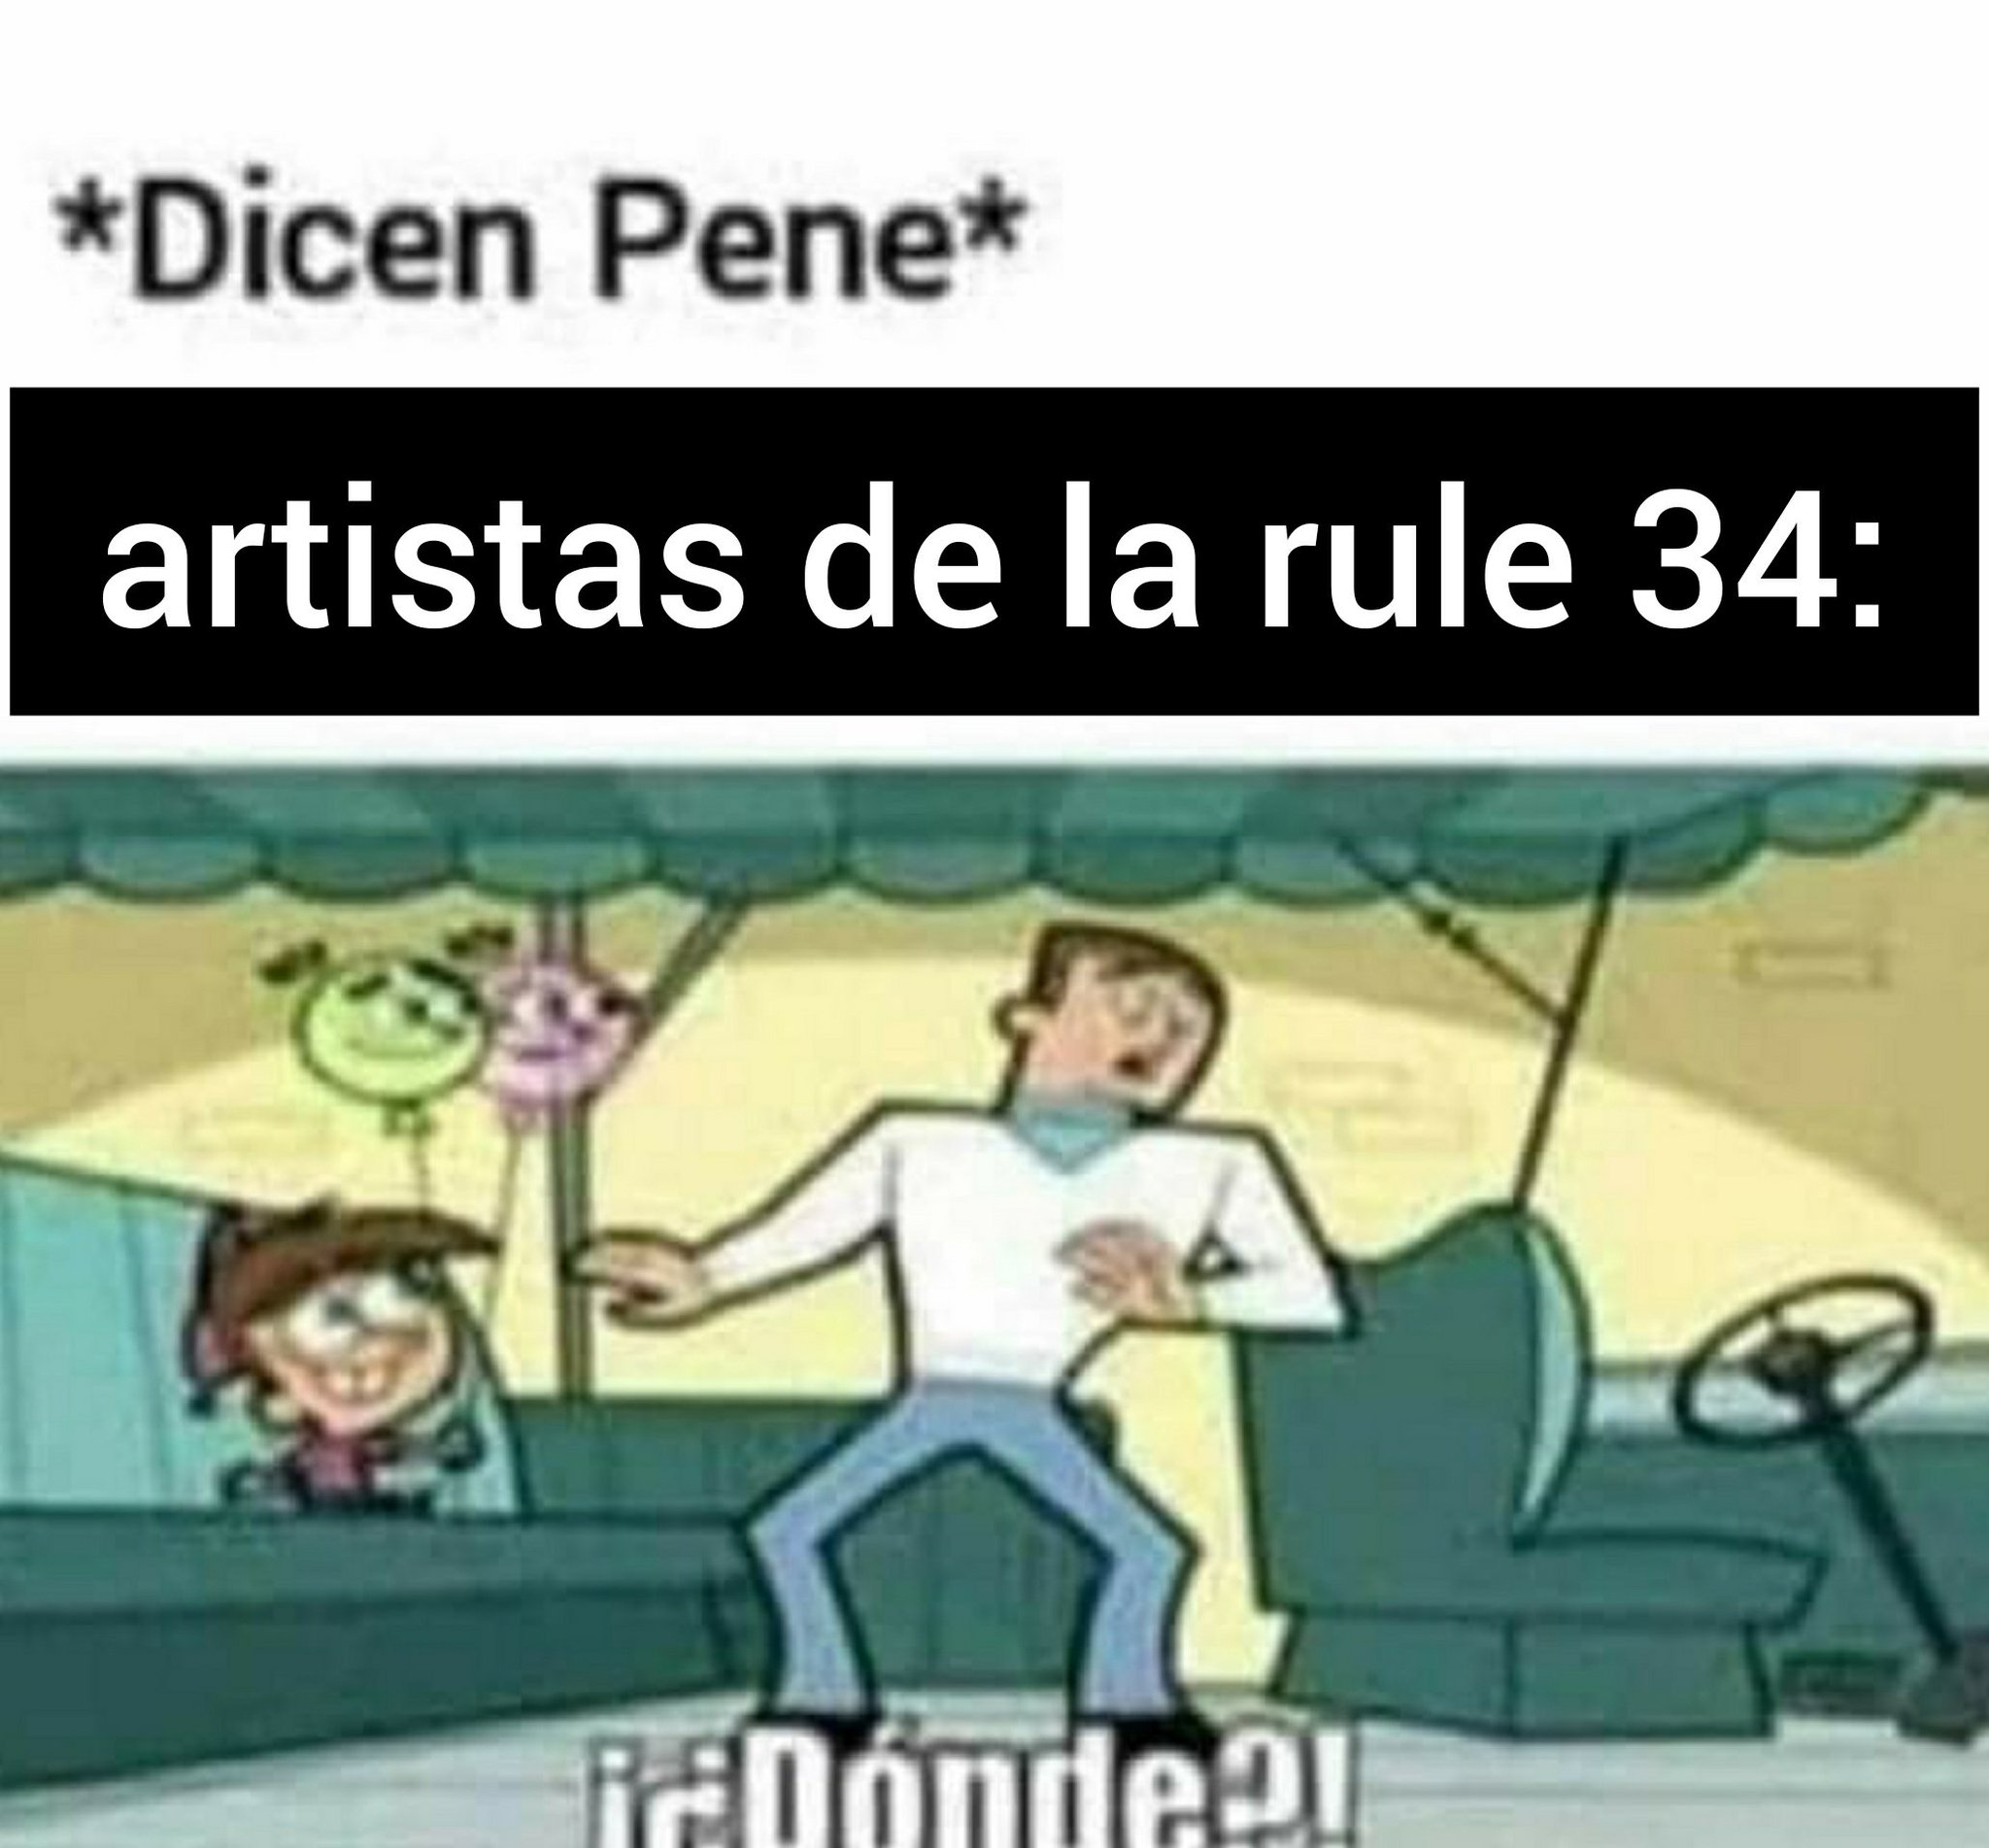 *dicen pene* artistas de la rule 34: - meme